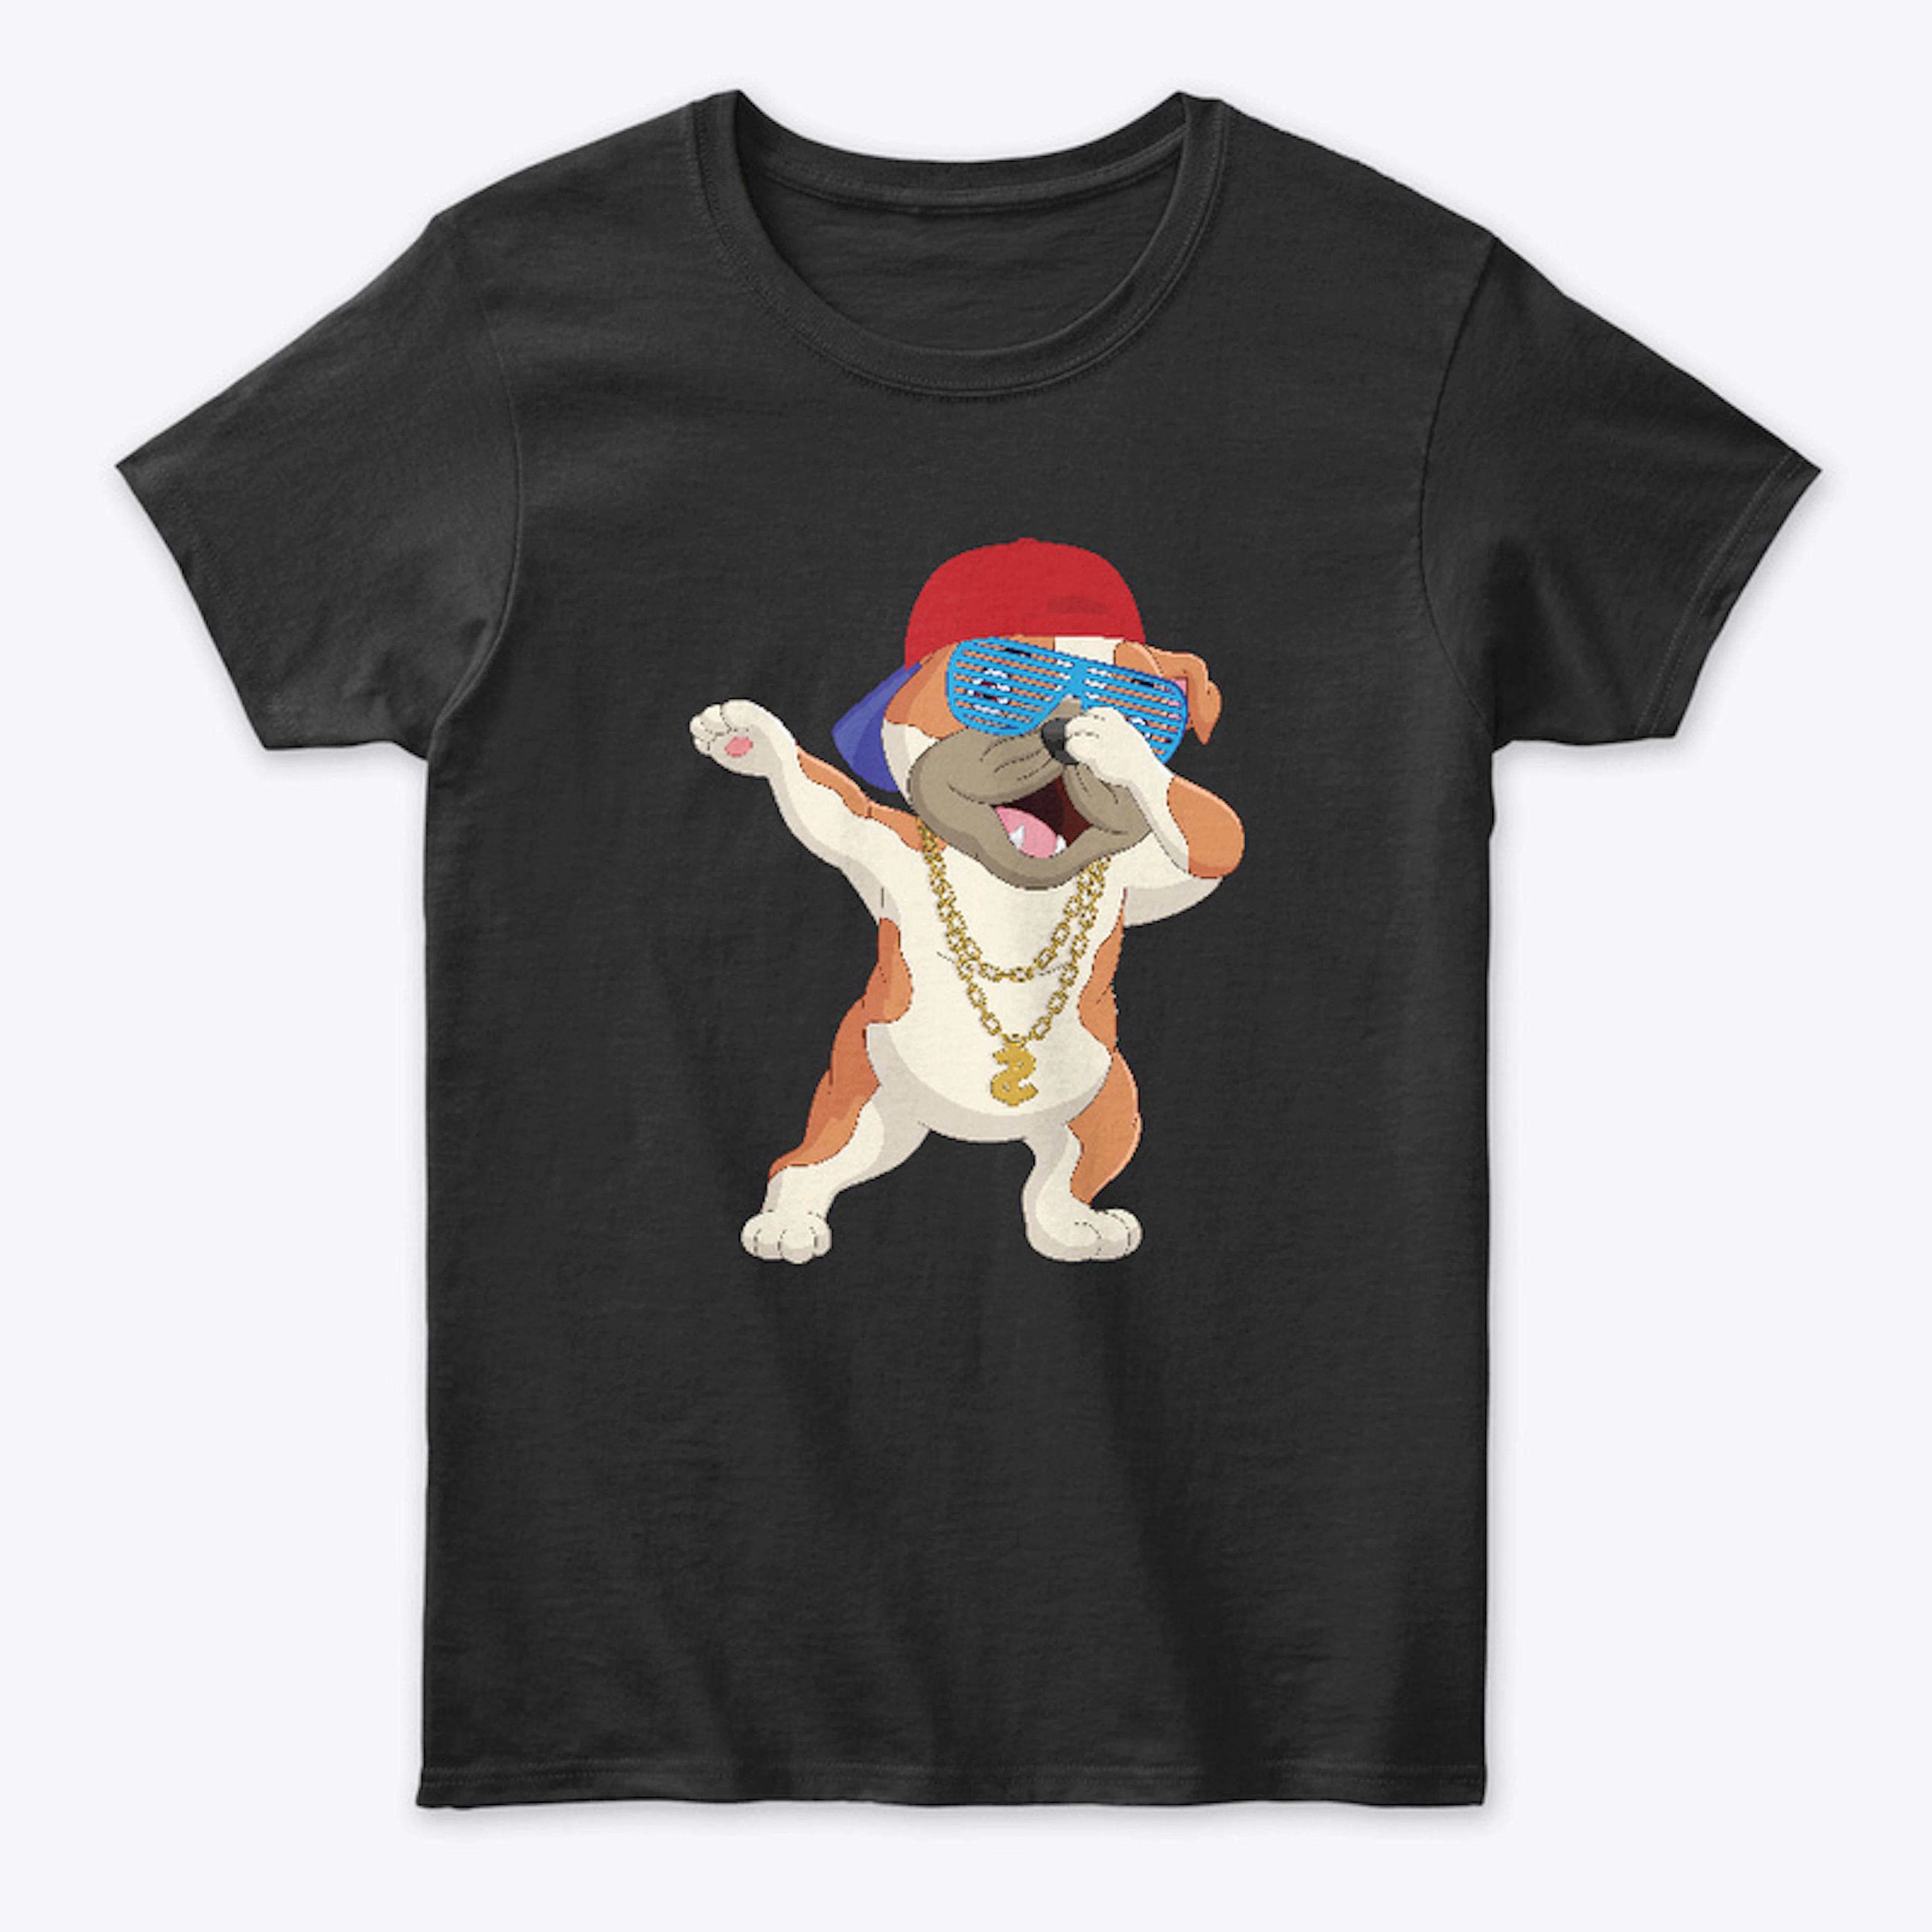 Women - Cool hipster dog t-shirt